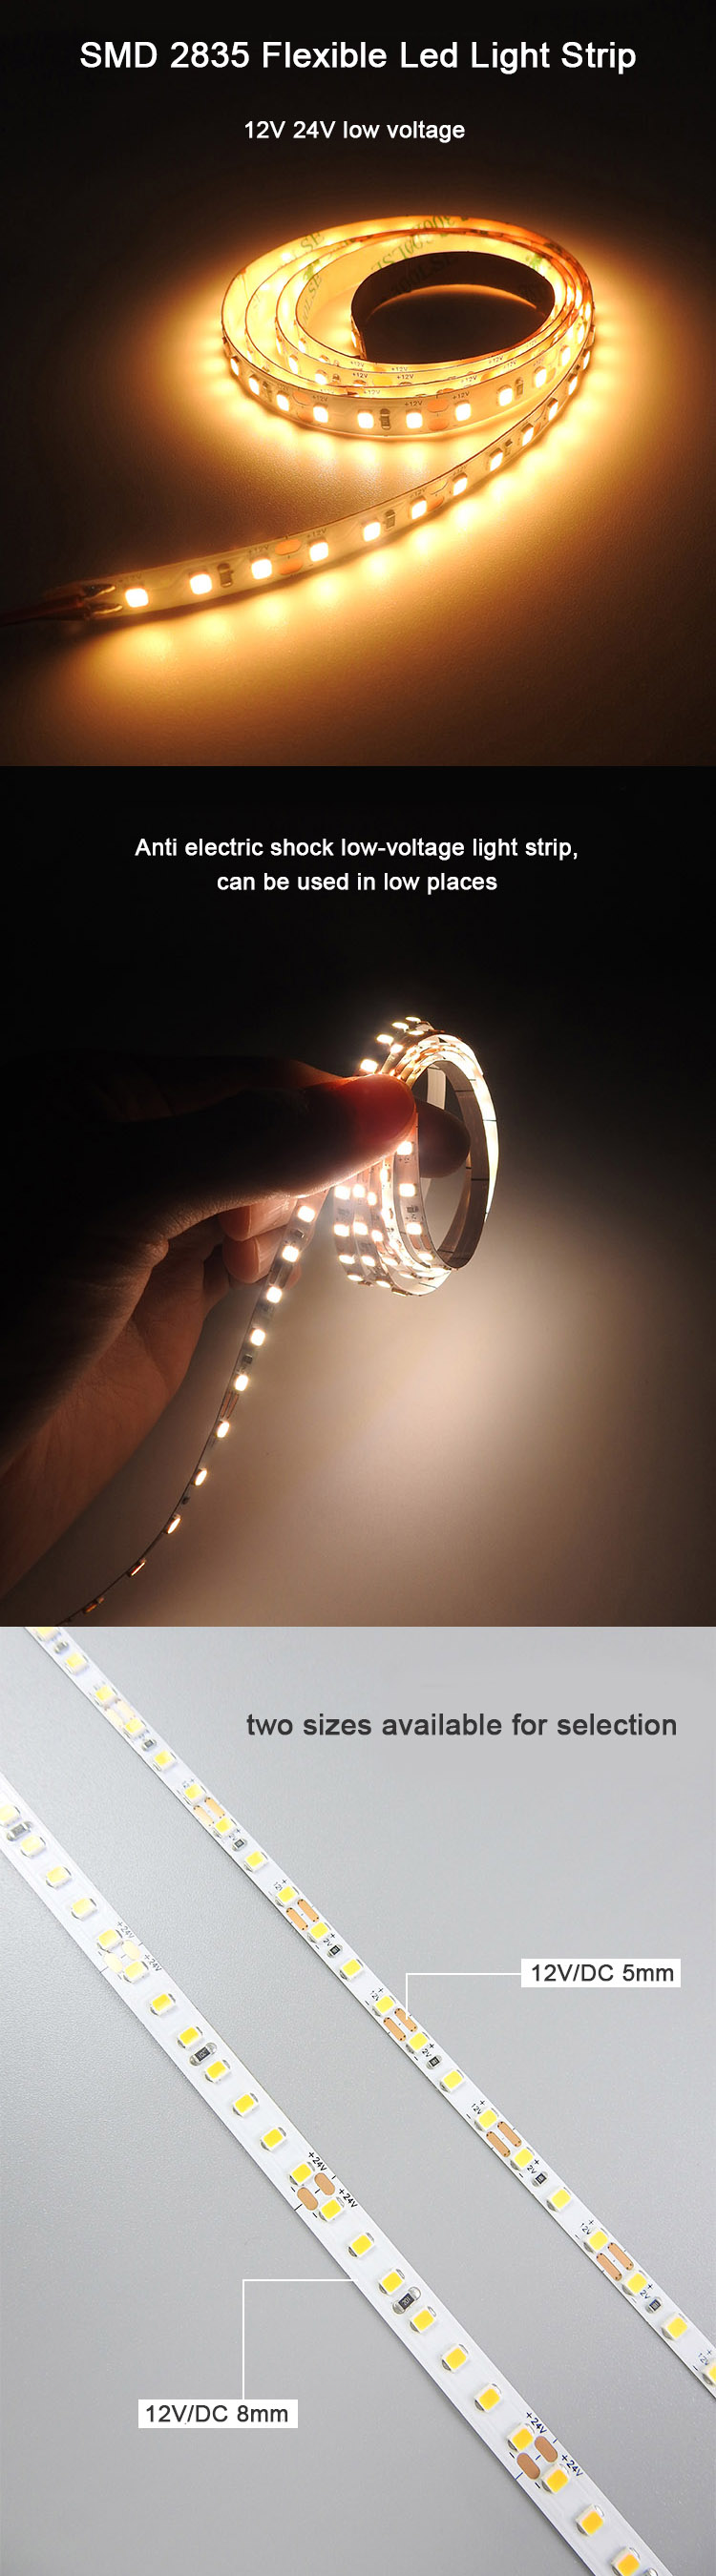 2835 flexible led light strip